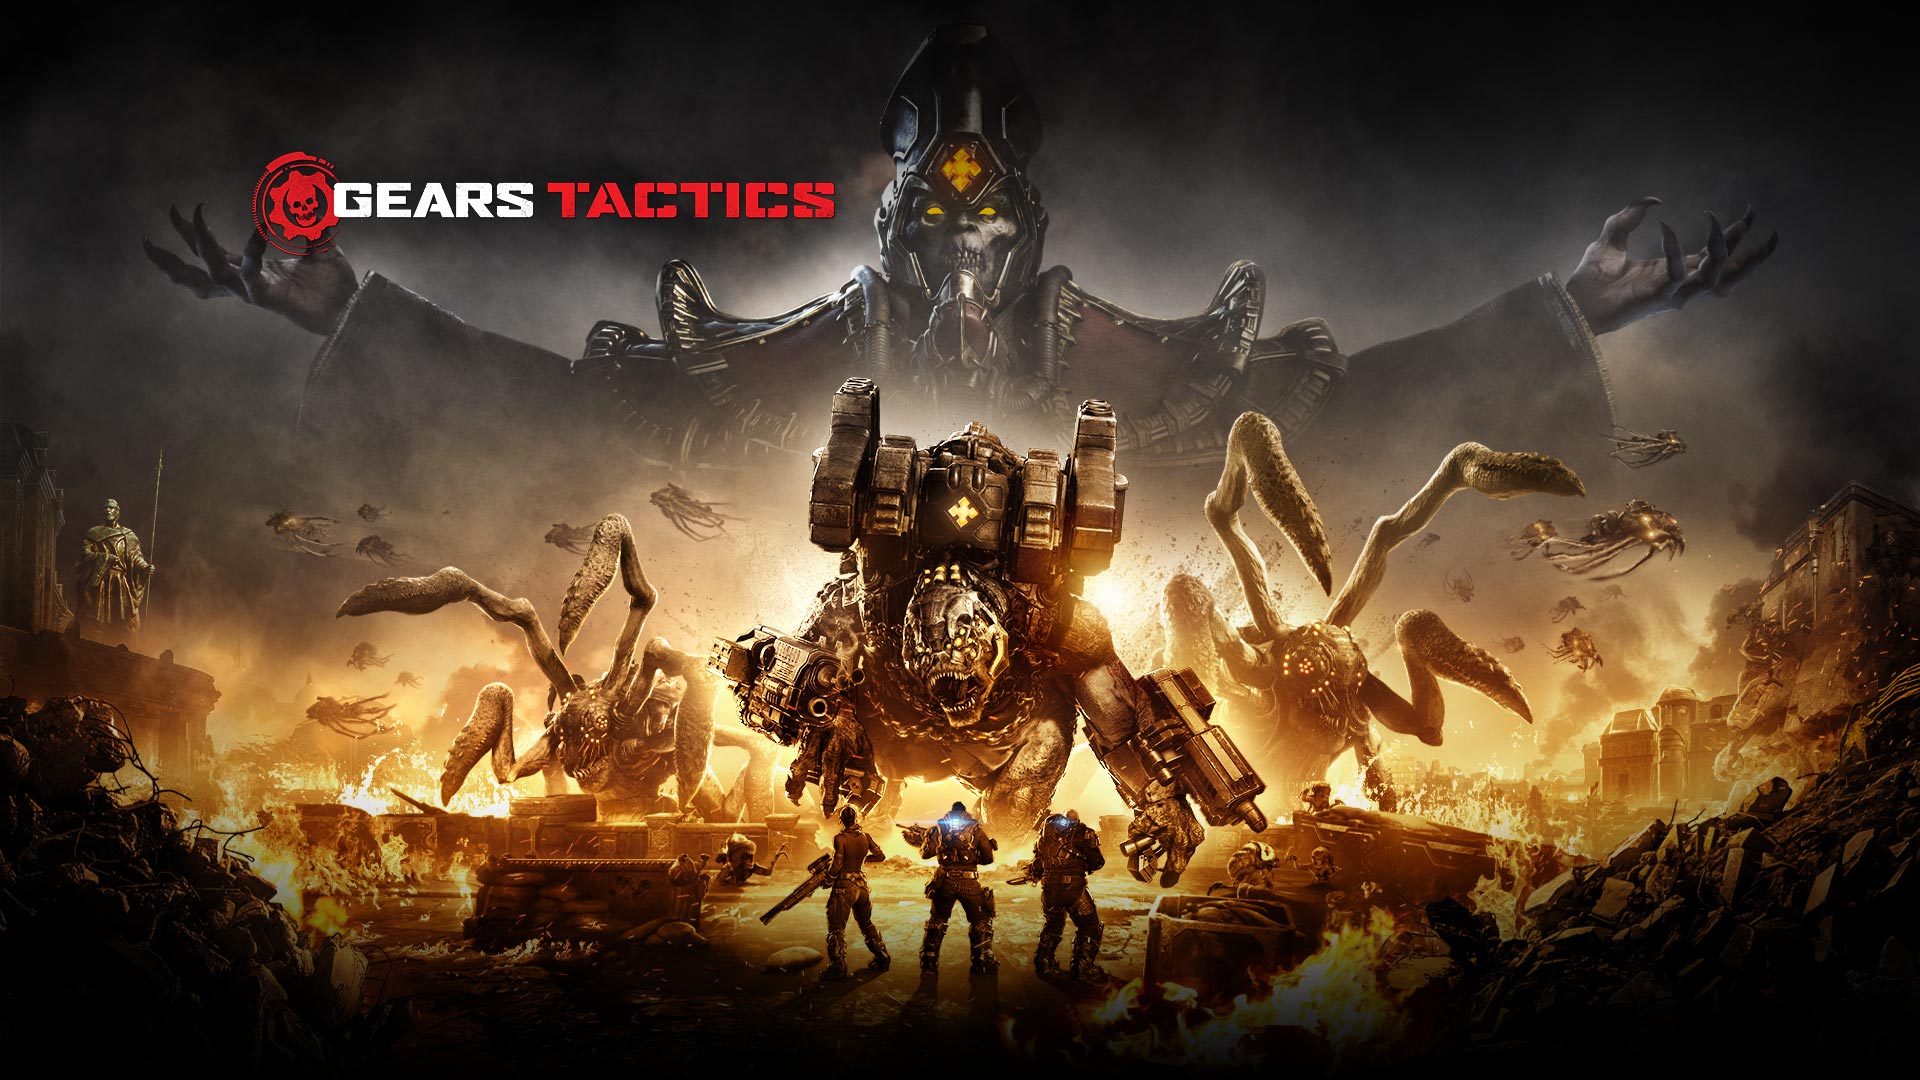 Gears Tactics Logosu, alev almış bir bölgenin içerisinde duran pek çok dev yaratıkla savaşmak üzere olan üç karakteri gösteren sahne